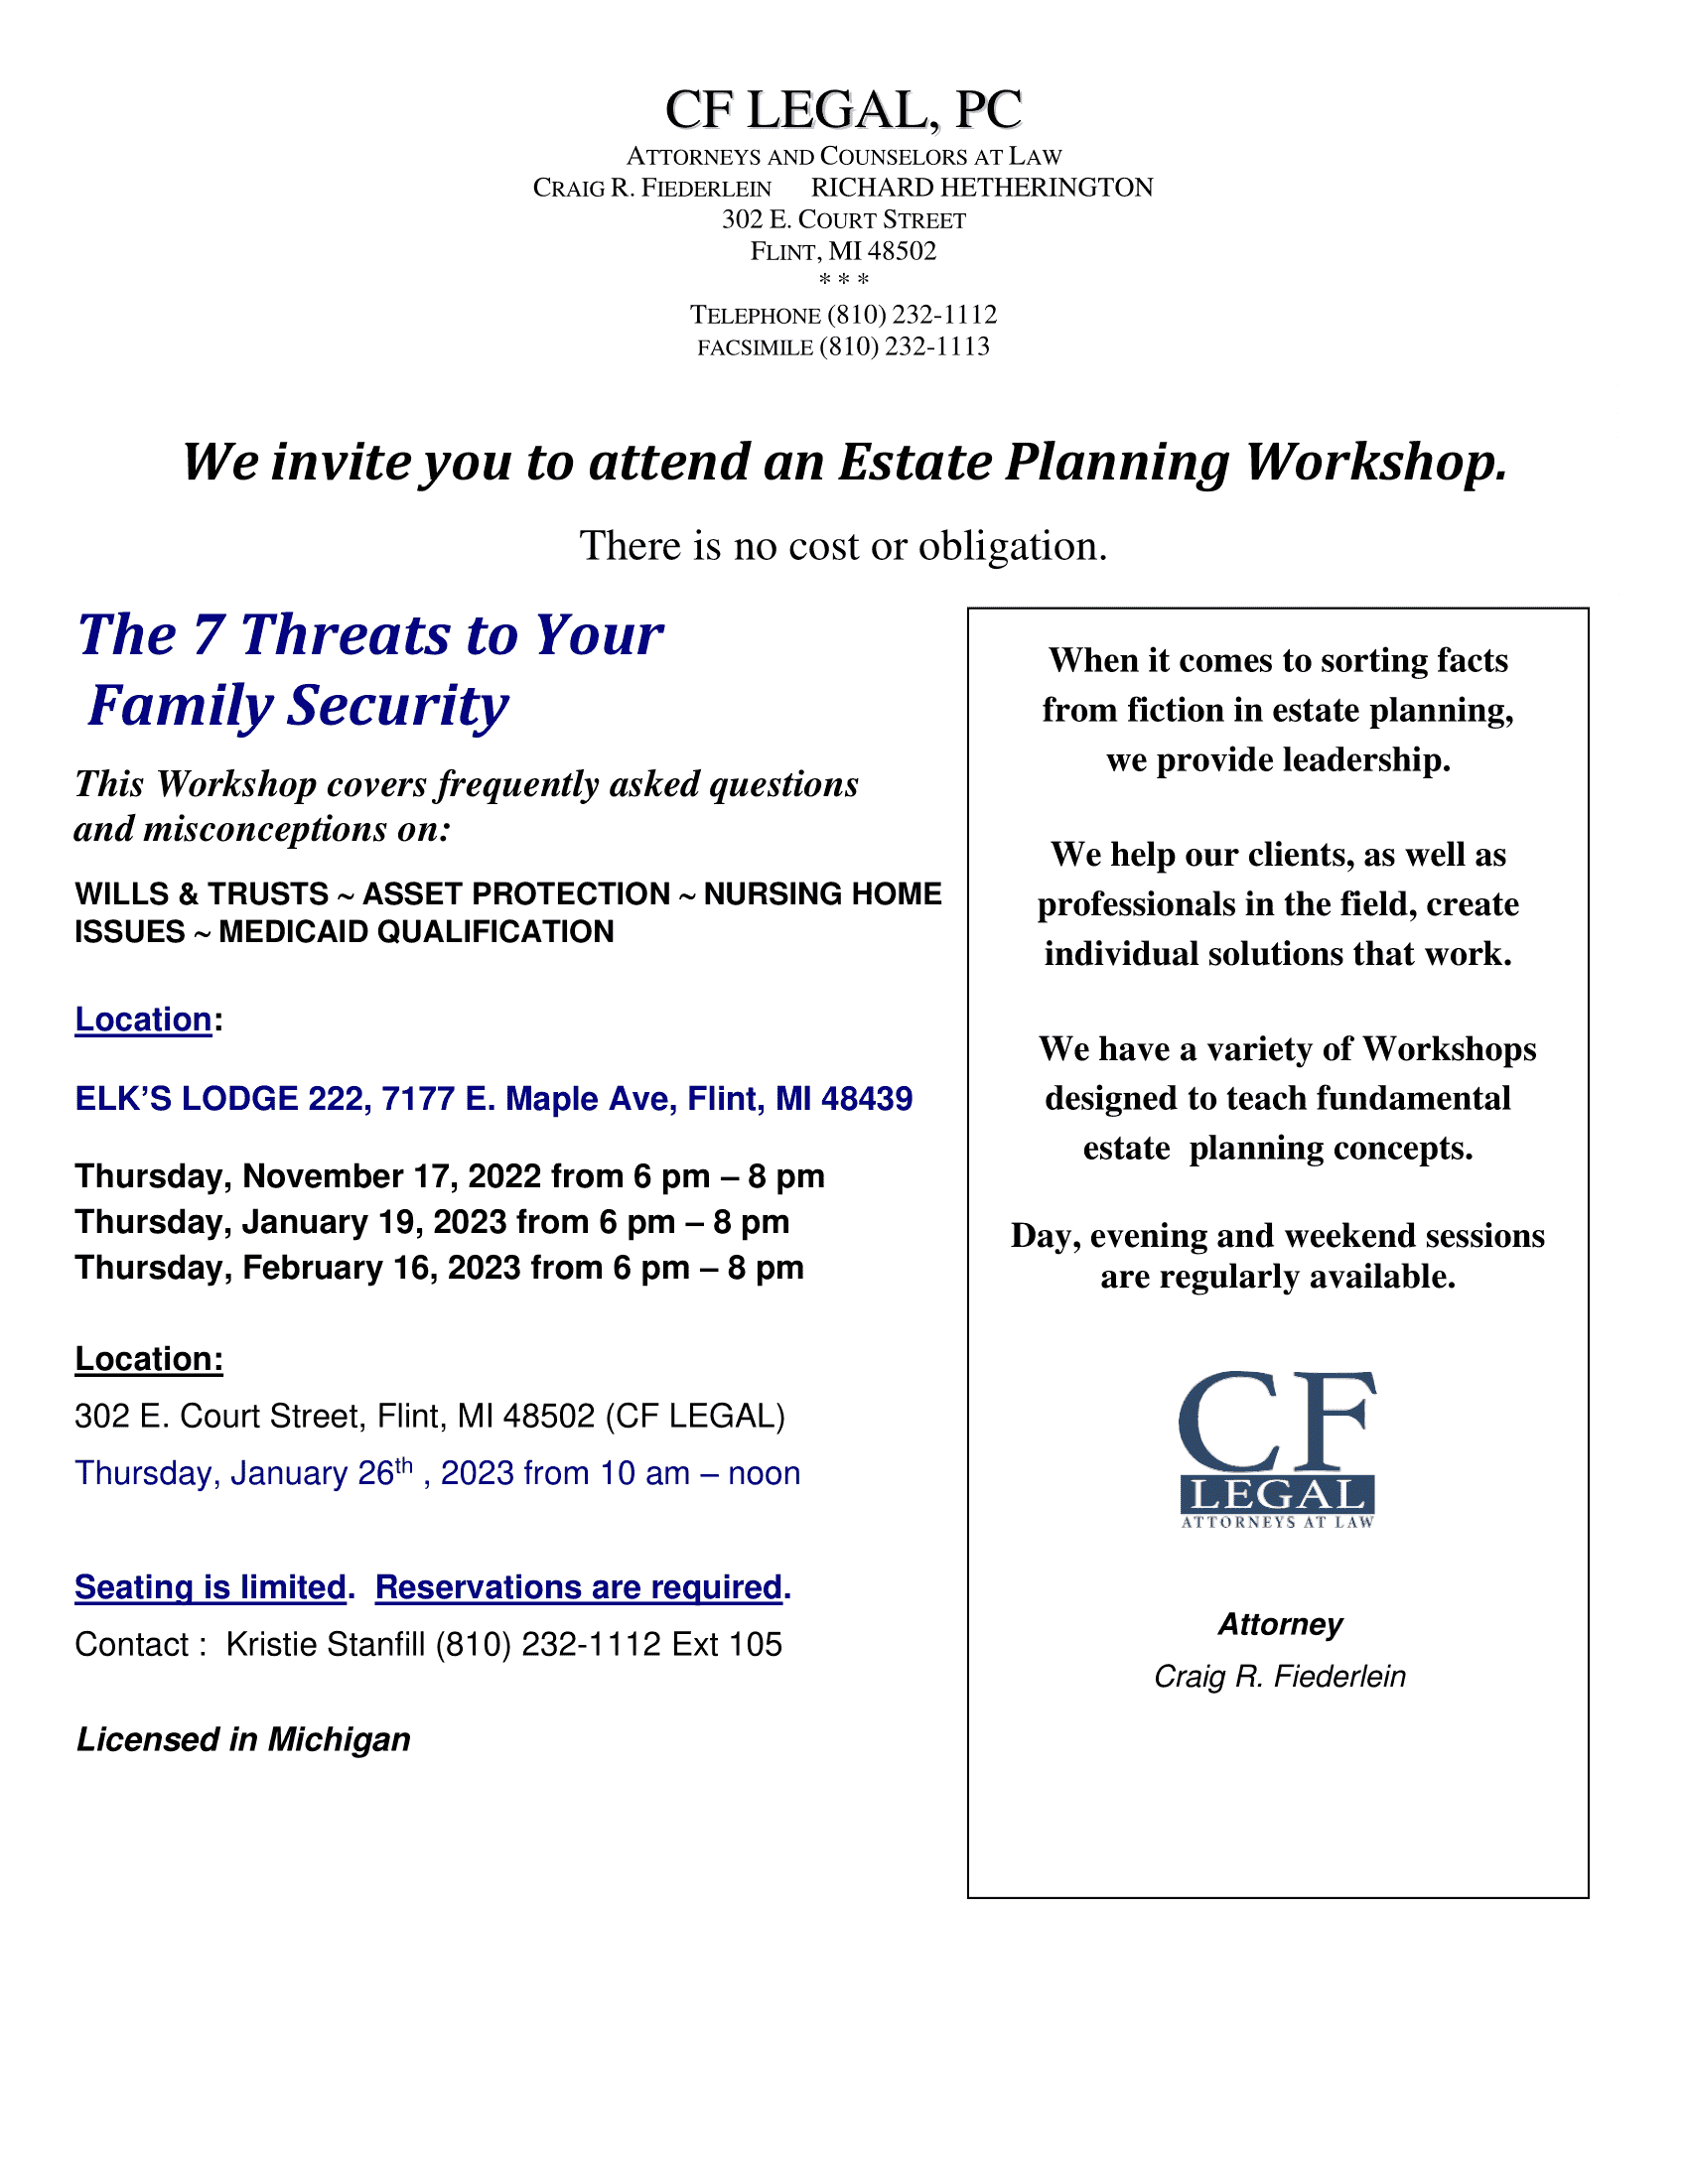 7-Threats Workshop Flyer 